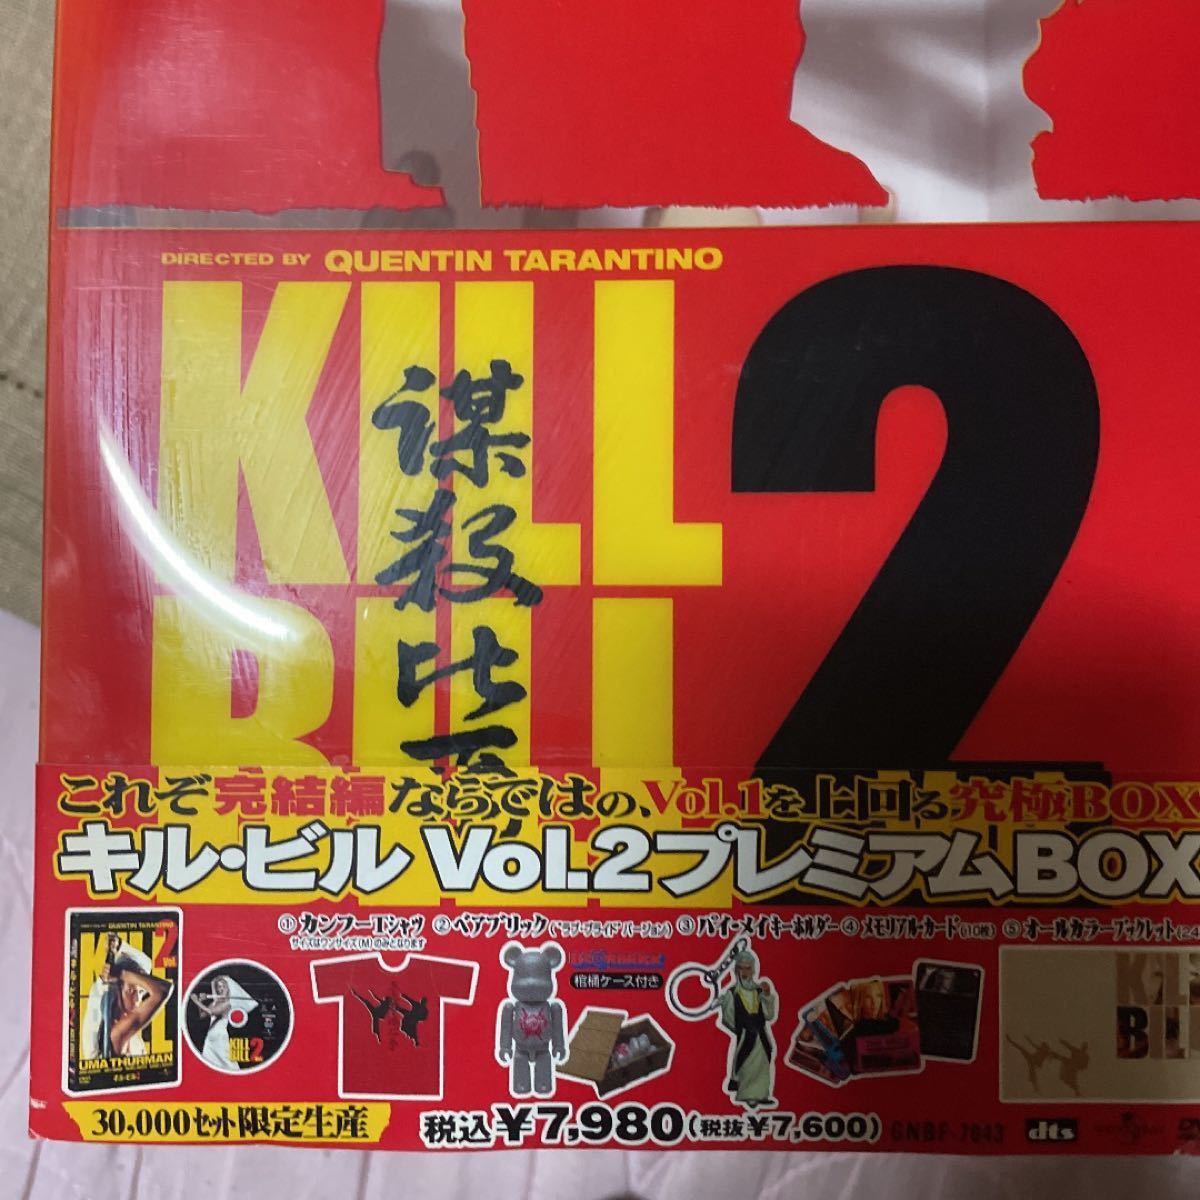 キル・ビル Vol.2 プレミアムBOX('04米)〈30000セット限定生産〉 DVD スペシャル・エディション DVD